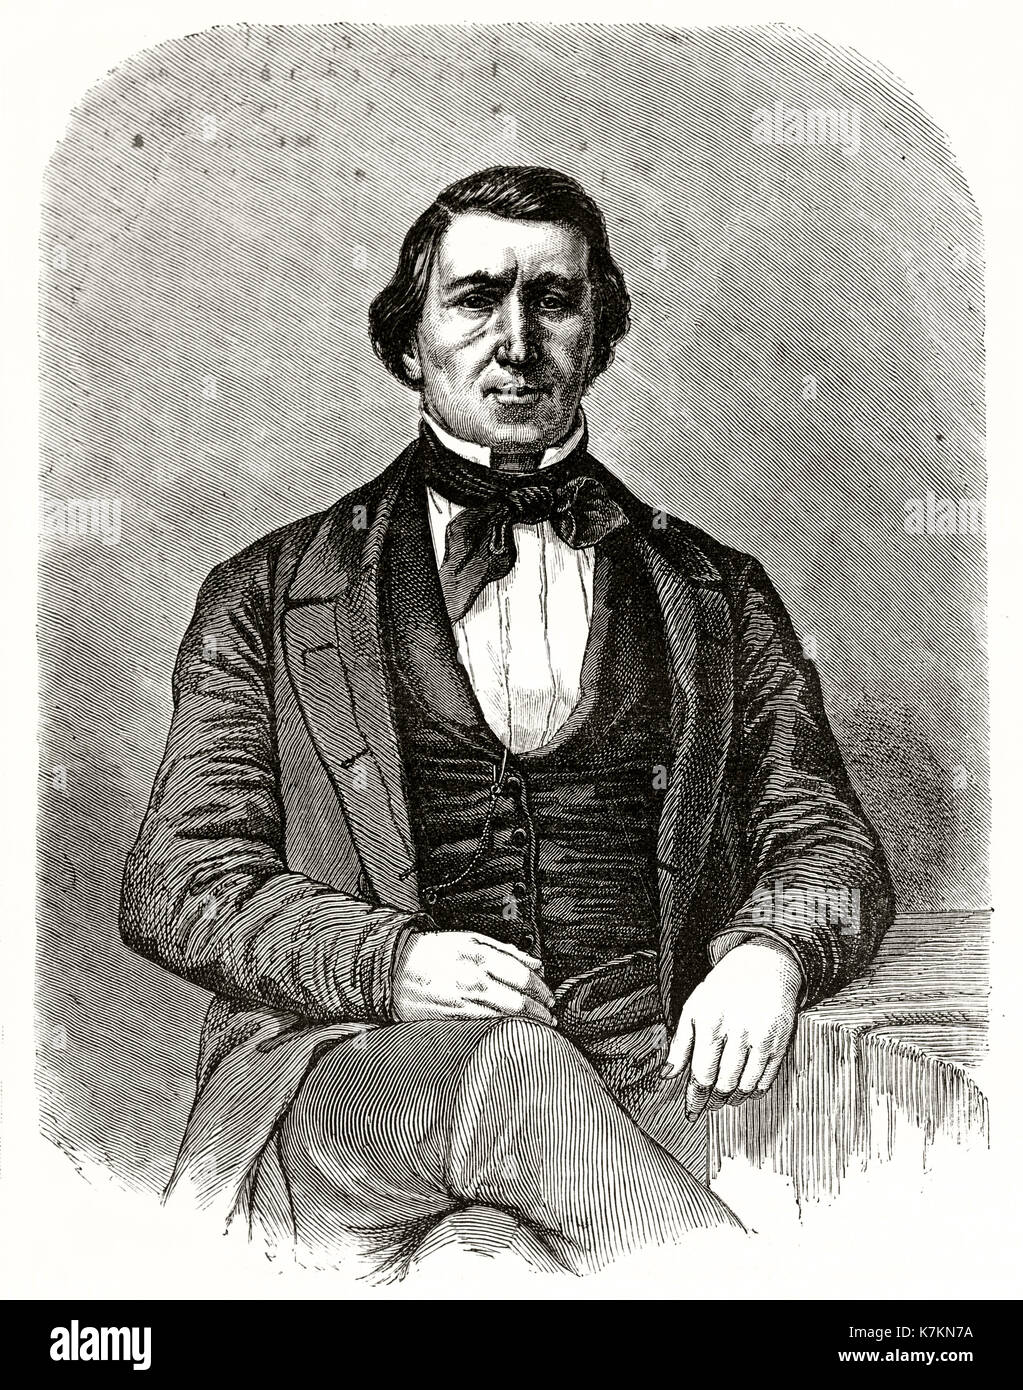 Vecchio ritratto inciso di Brigham Young (1801 - 1877), Mormon leader. Da Mettais dopo Remy, publ. in Le Tour du Monde, Parigi, 1862 Foto Stock